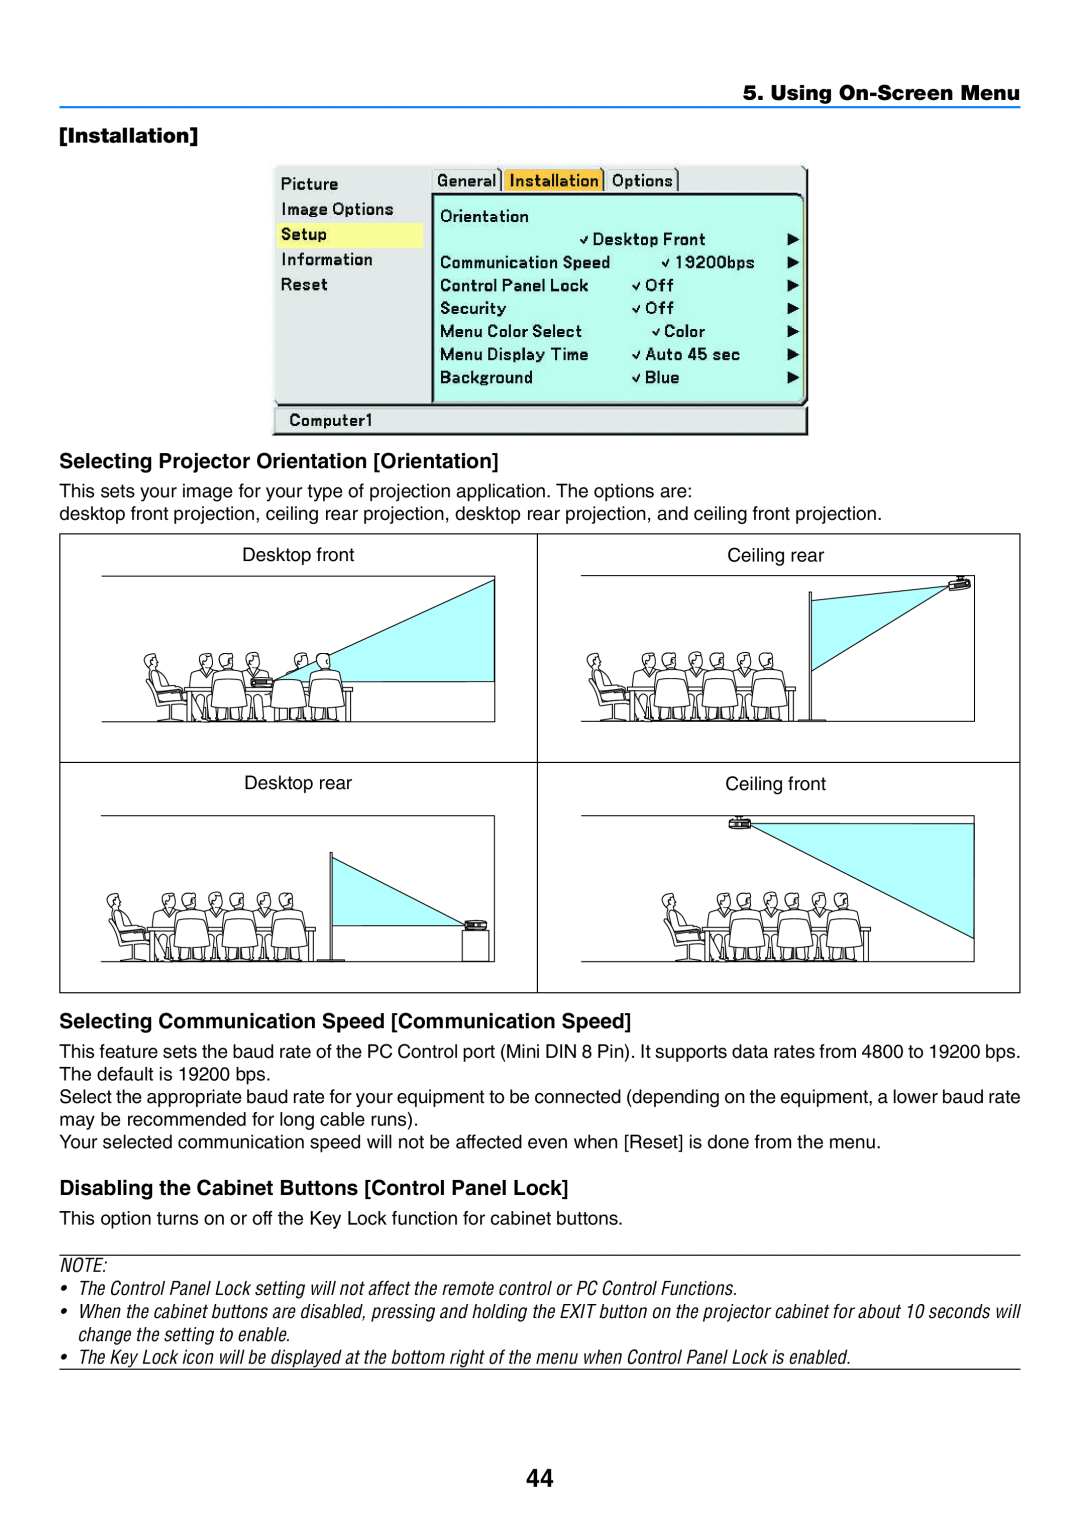 NEC VT57, VT58, VT480 manual Using On-Screen Menu Installation, Selecting Projector Orientation Orientation 